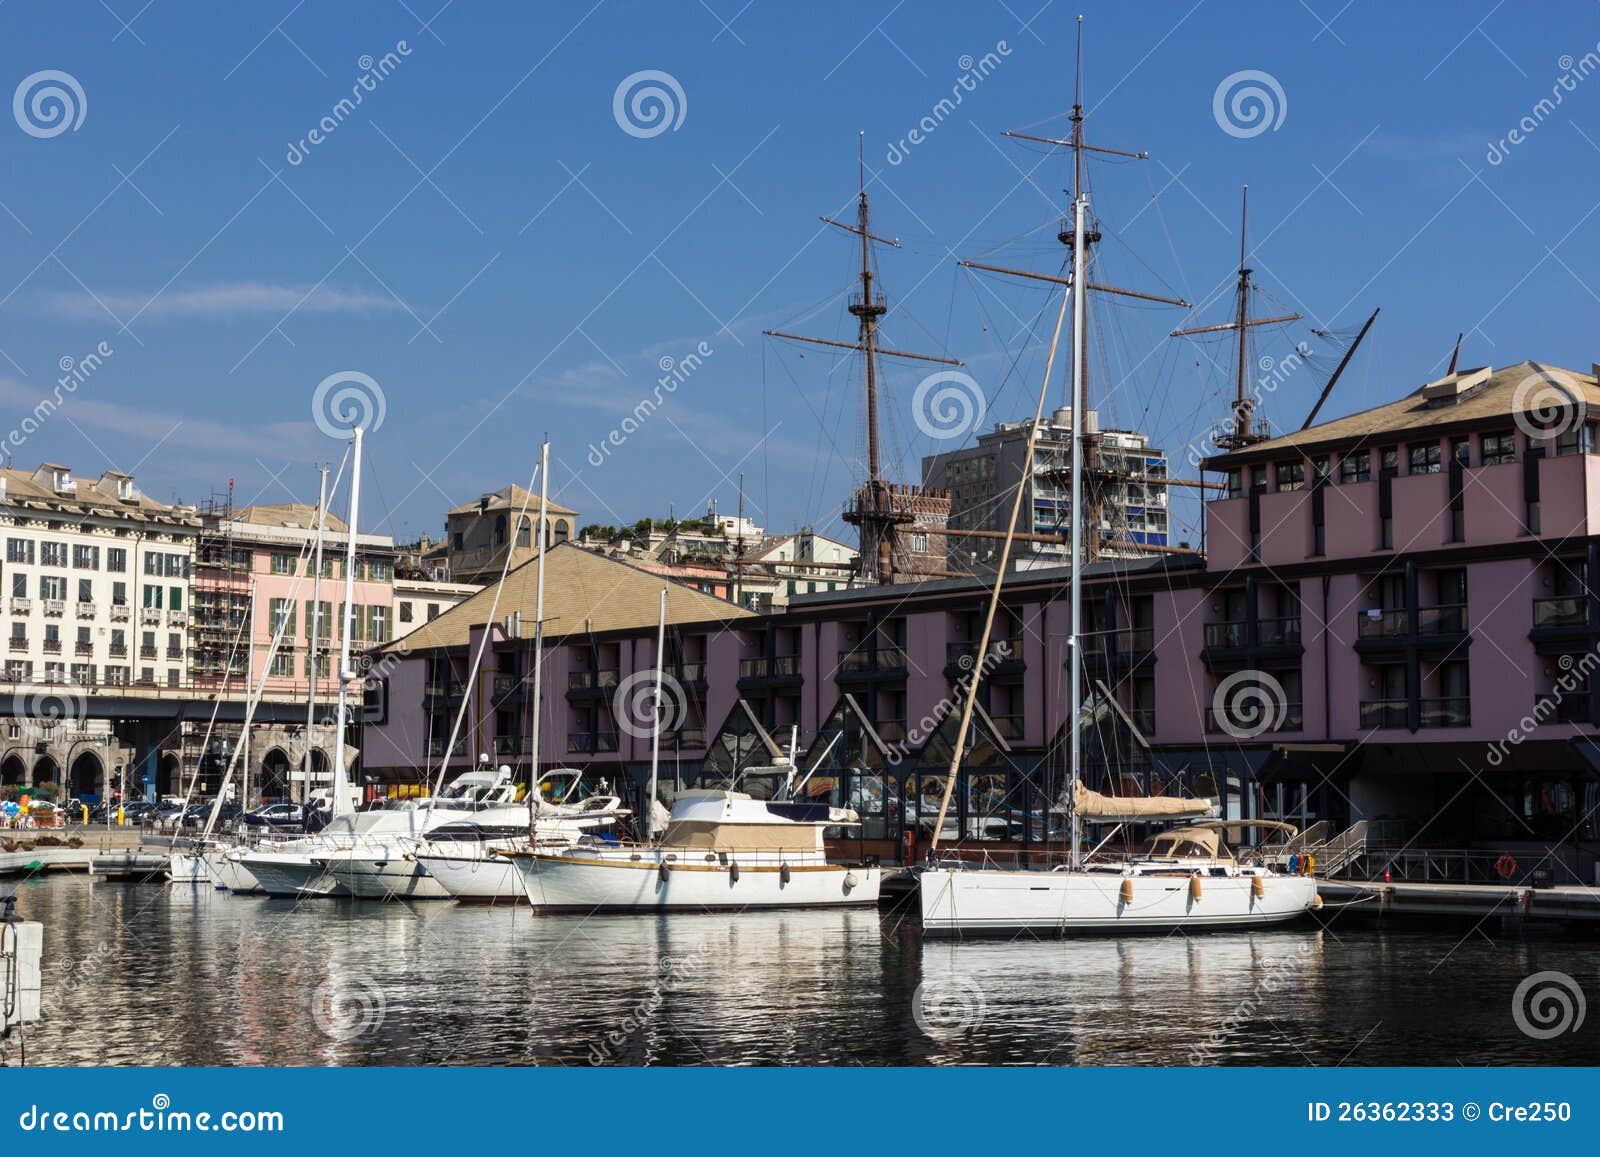 ship in porto antico, genoa